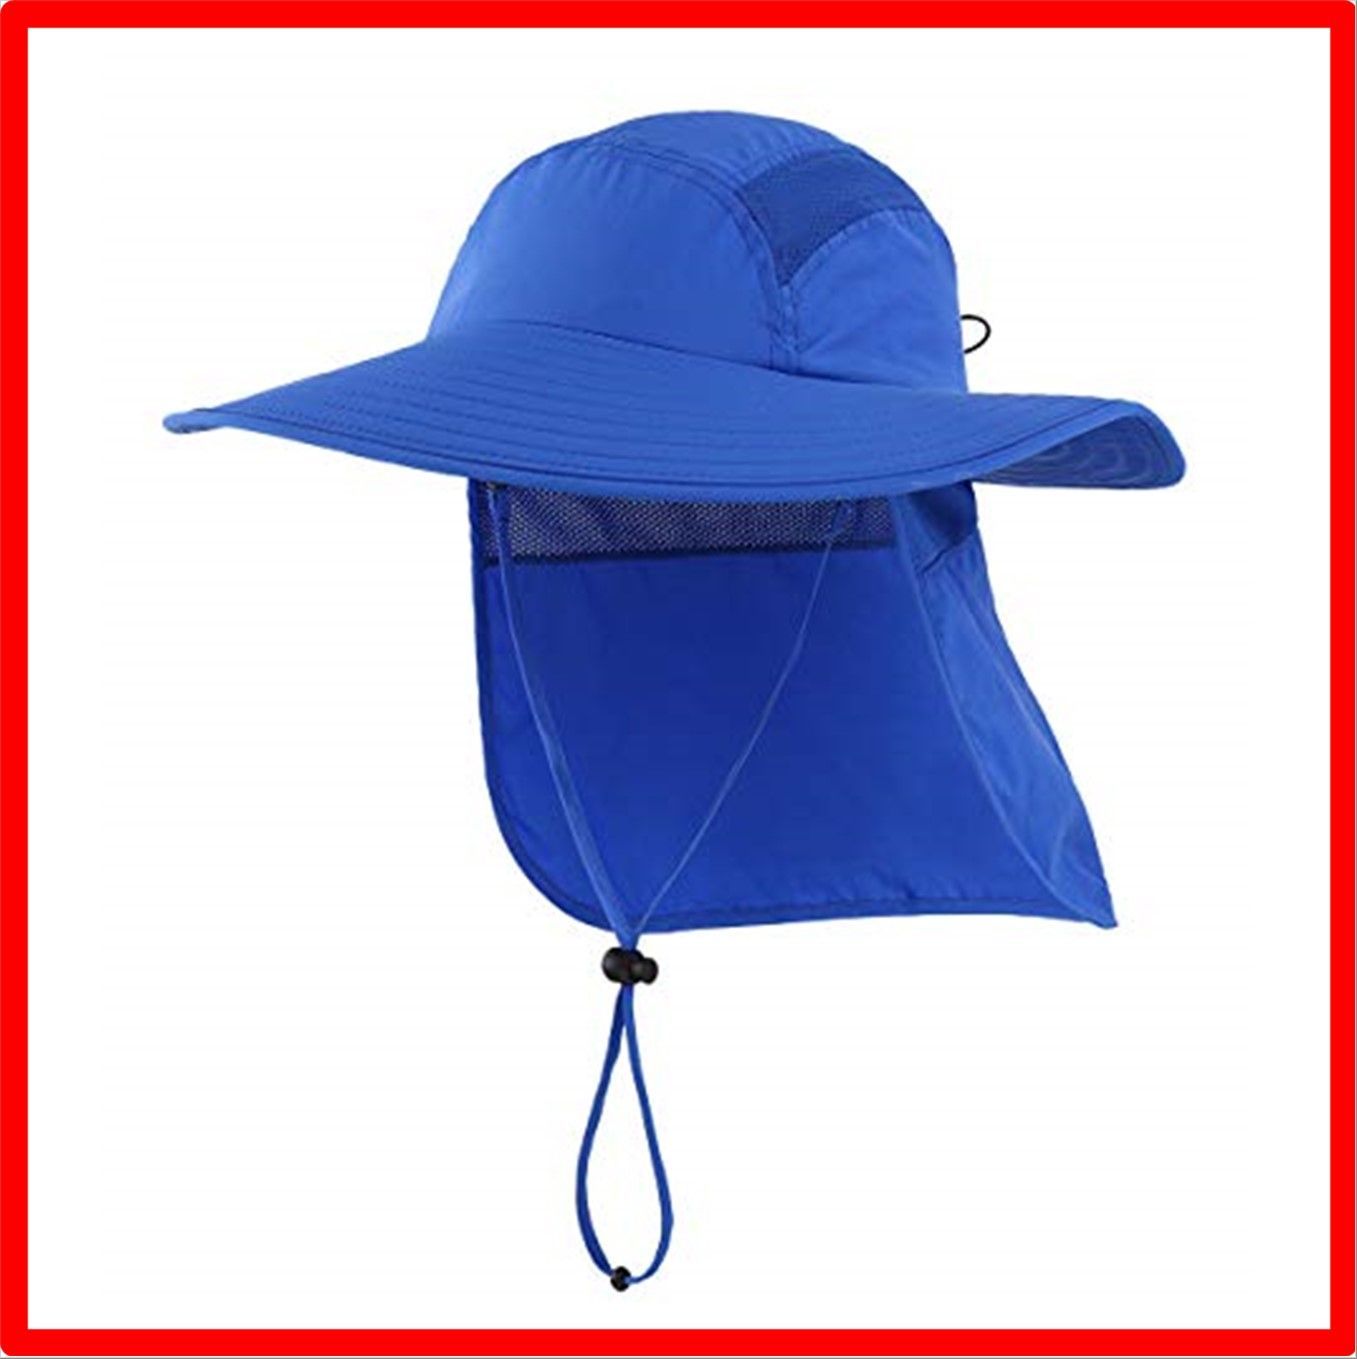 【激安特価】ブライト ブルー_L [コネクタイル] アウトドア ユニセックス UPF 50+ つば広 サファリハット 夏 日よけ帽子 農作業 帽子  釣り帽 UV